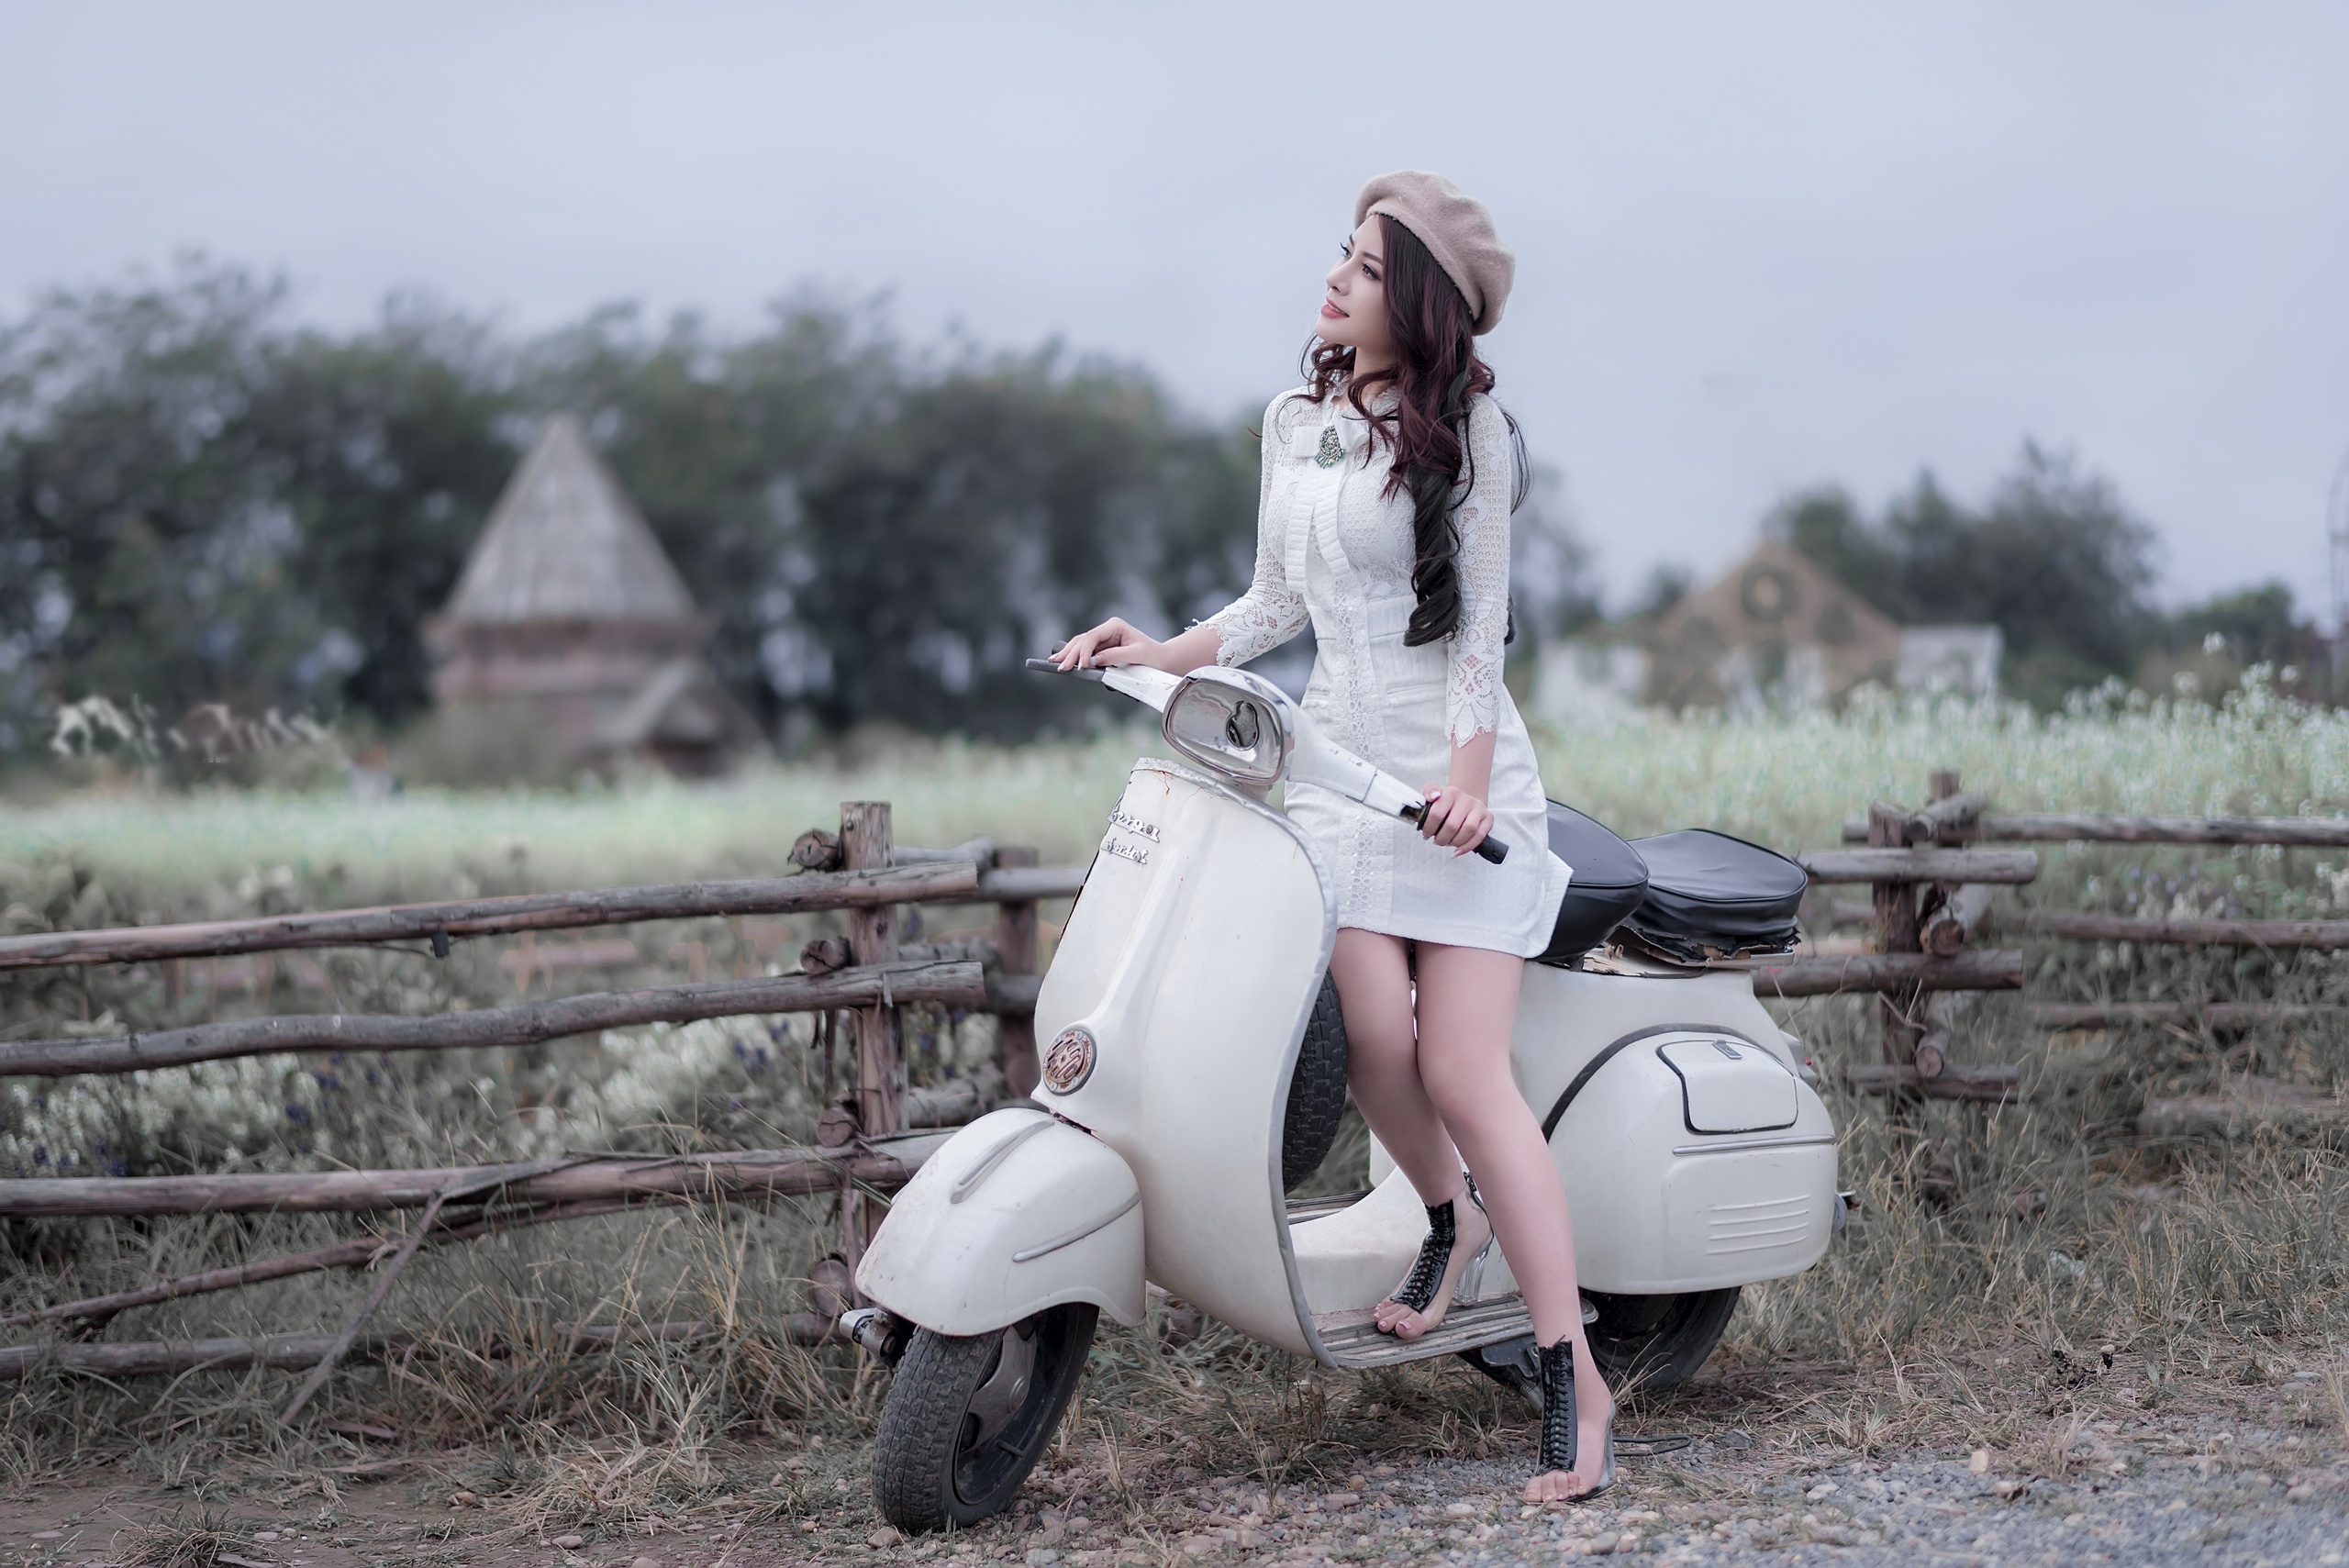 Asian Women Women Outdoors Vehicle Mopeds Vespa 2560x1709